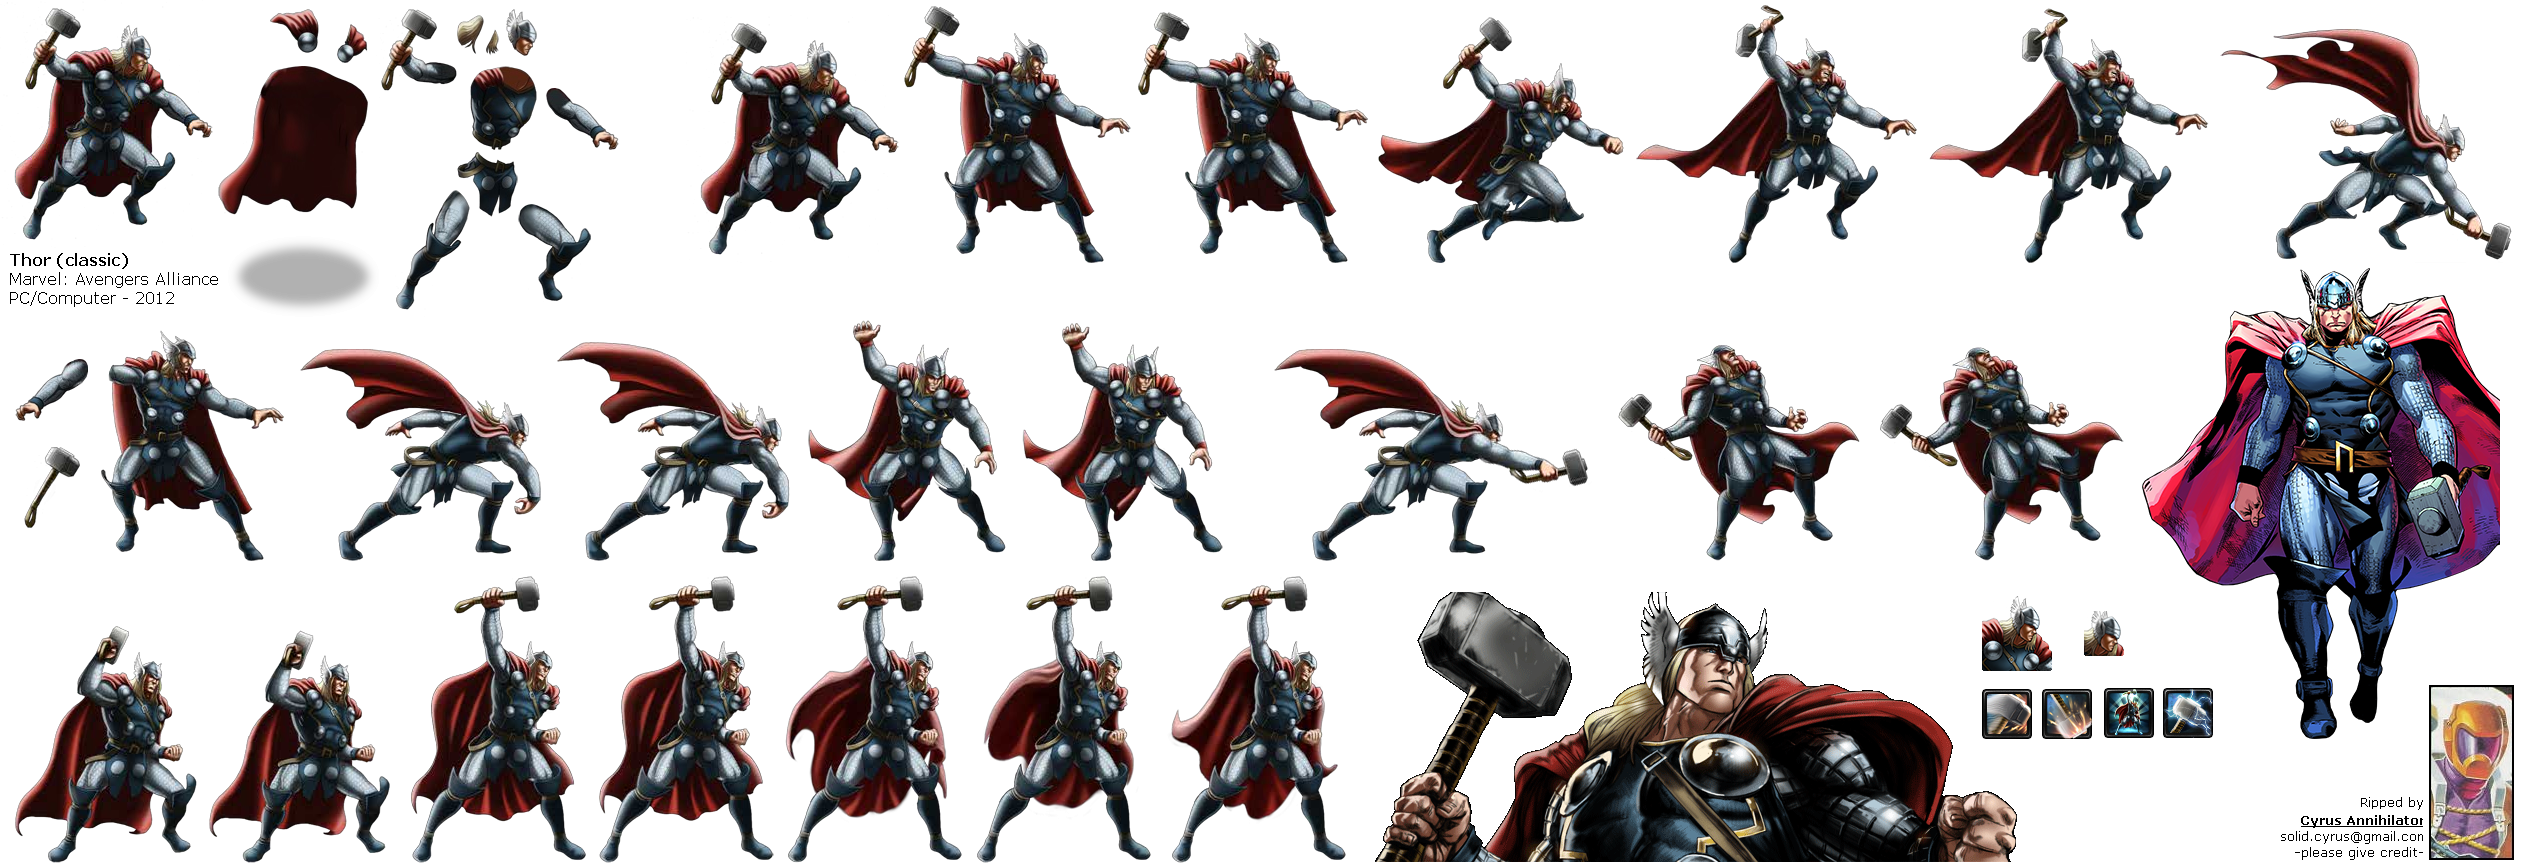 Thor (Classic)